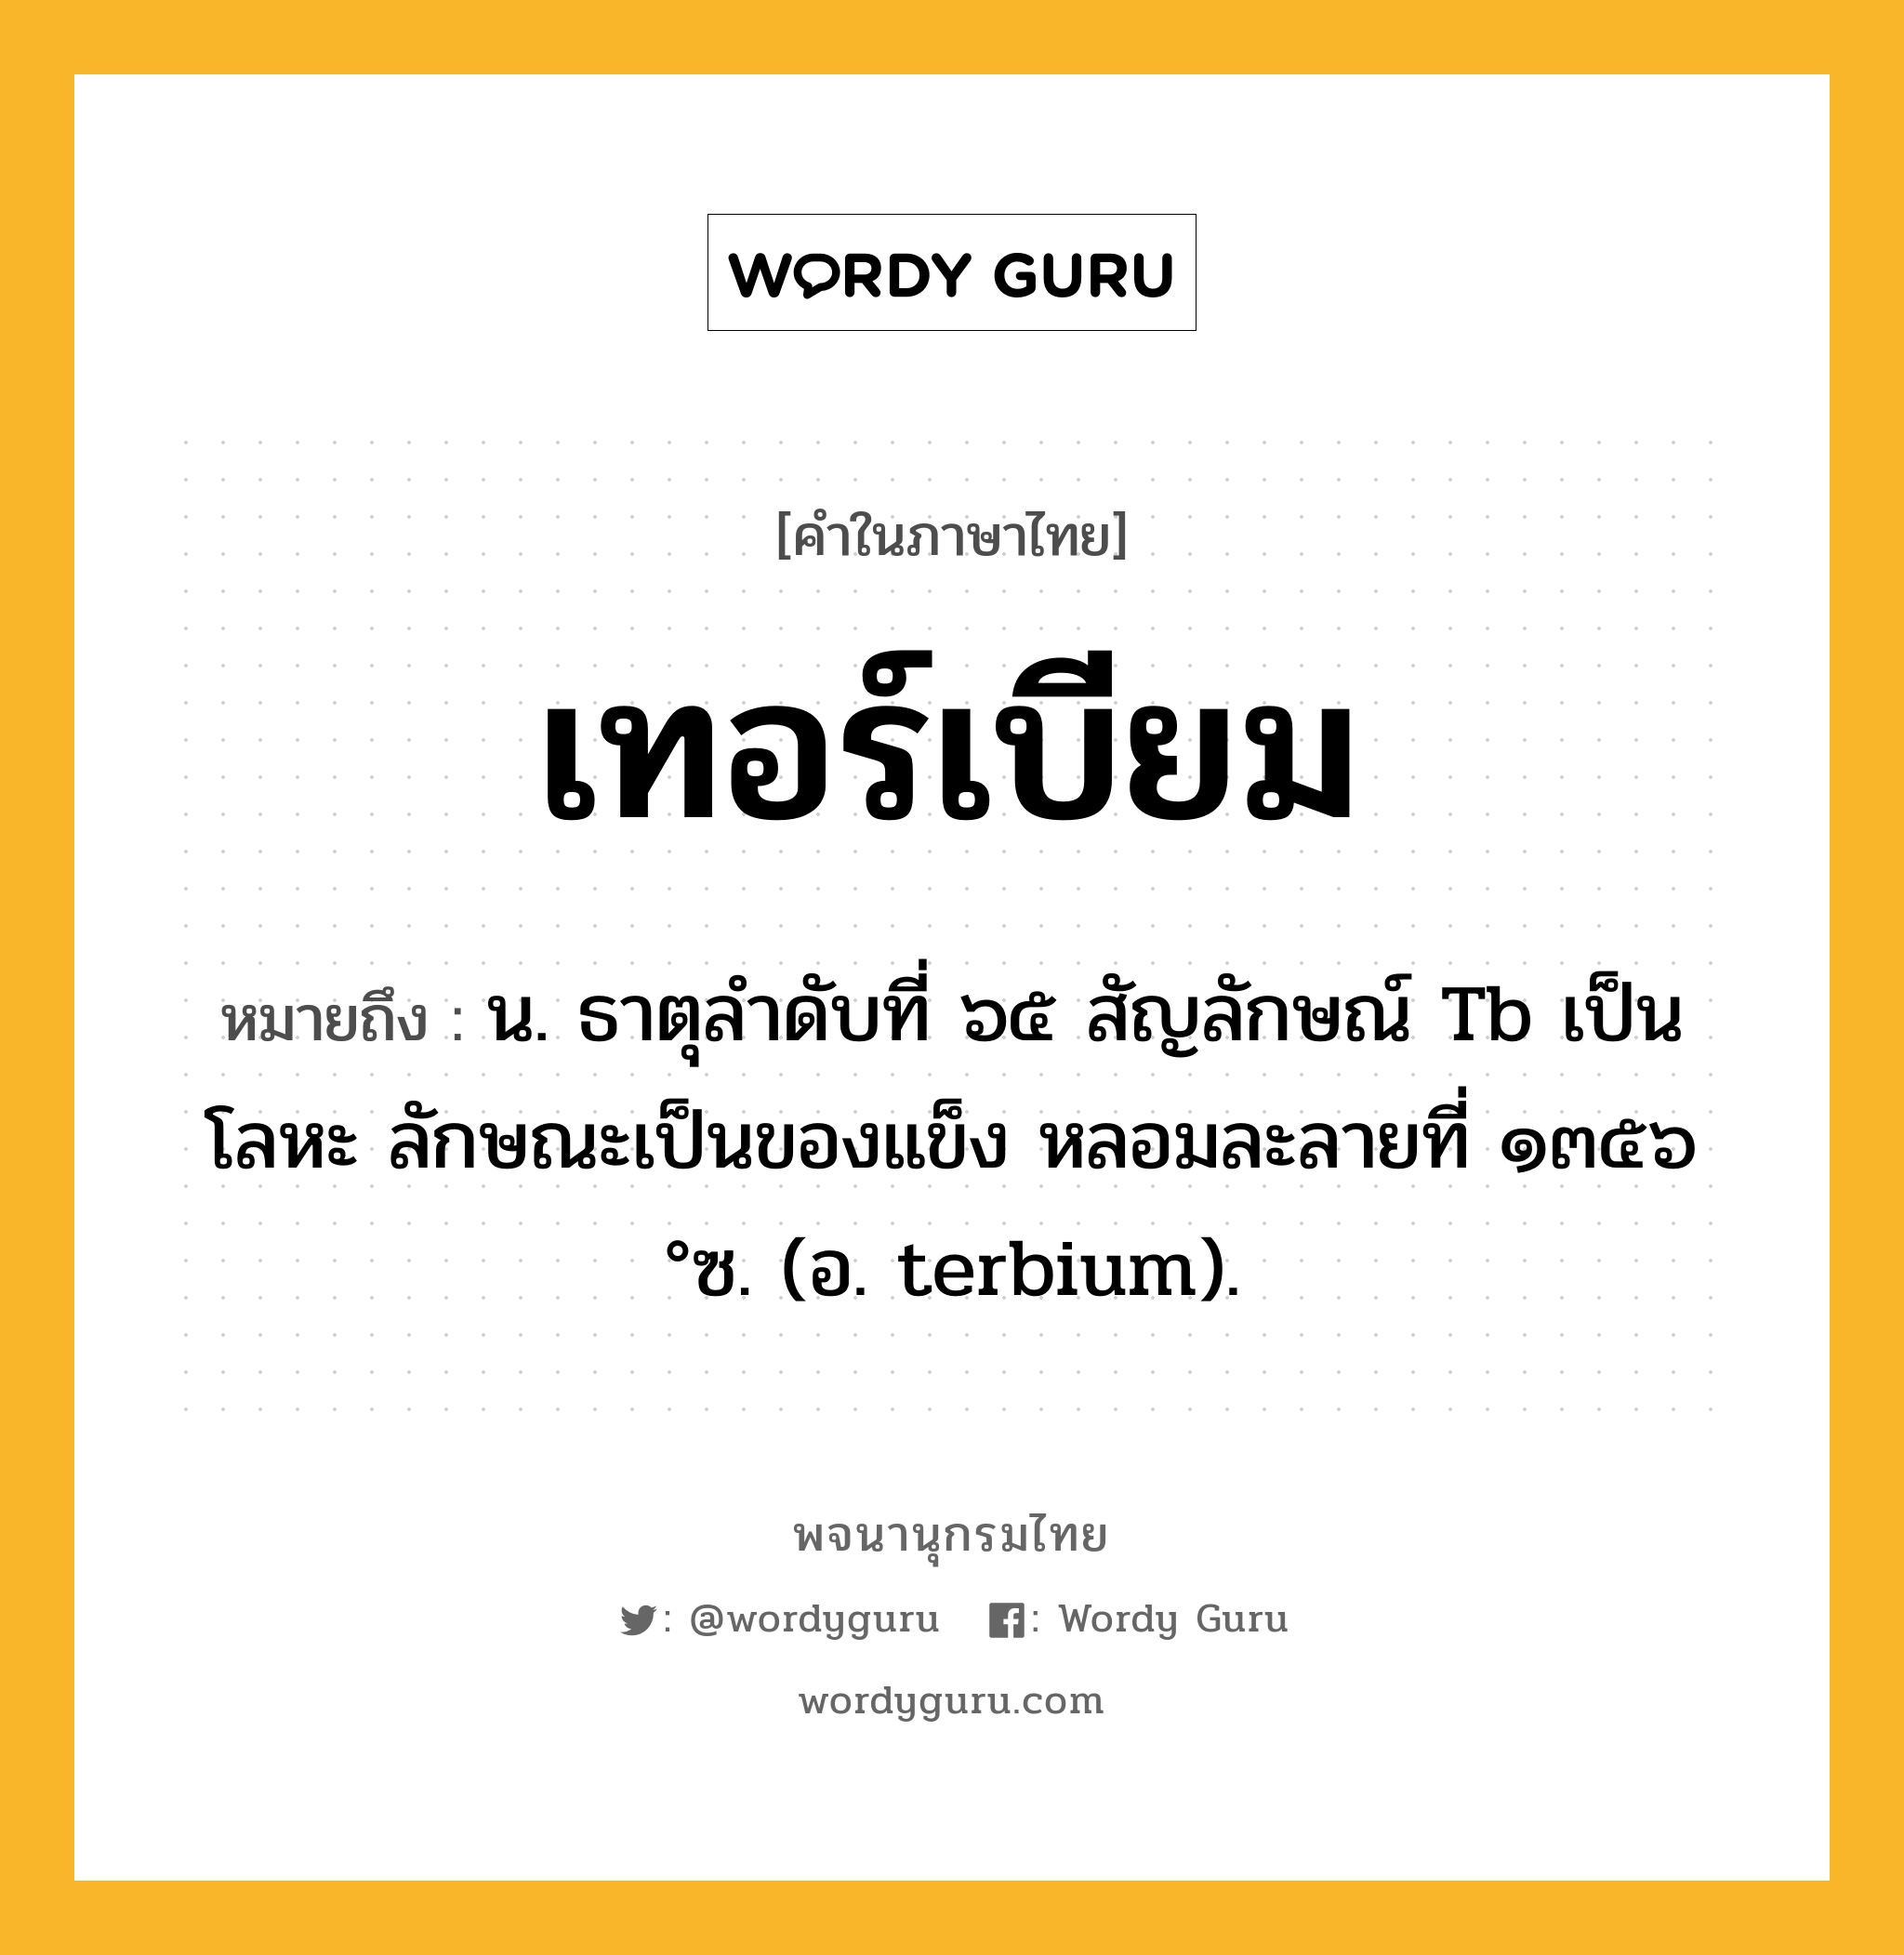 เทอร์เบียม ความหมาย หมายถึงอะไร?, คำในภาษาไทย เทอร์เบียม หมายถึง น. ธาตุลําดับที่ ๖๕ สัญลักษณ์ Tb เป็นโลหะ ลักษณะเป็นของแข็ง หลอมละลายที่ ๑๓๕๖ °ซ. (อ. terbium).